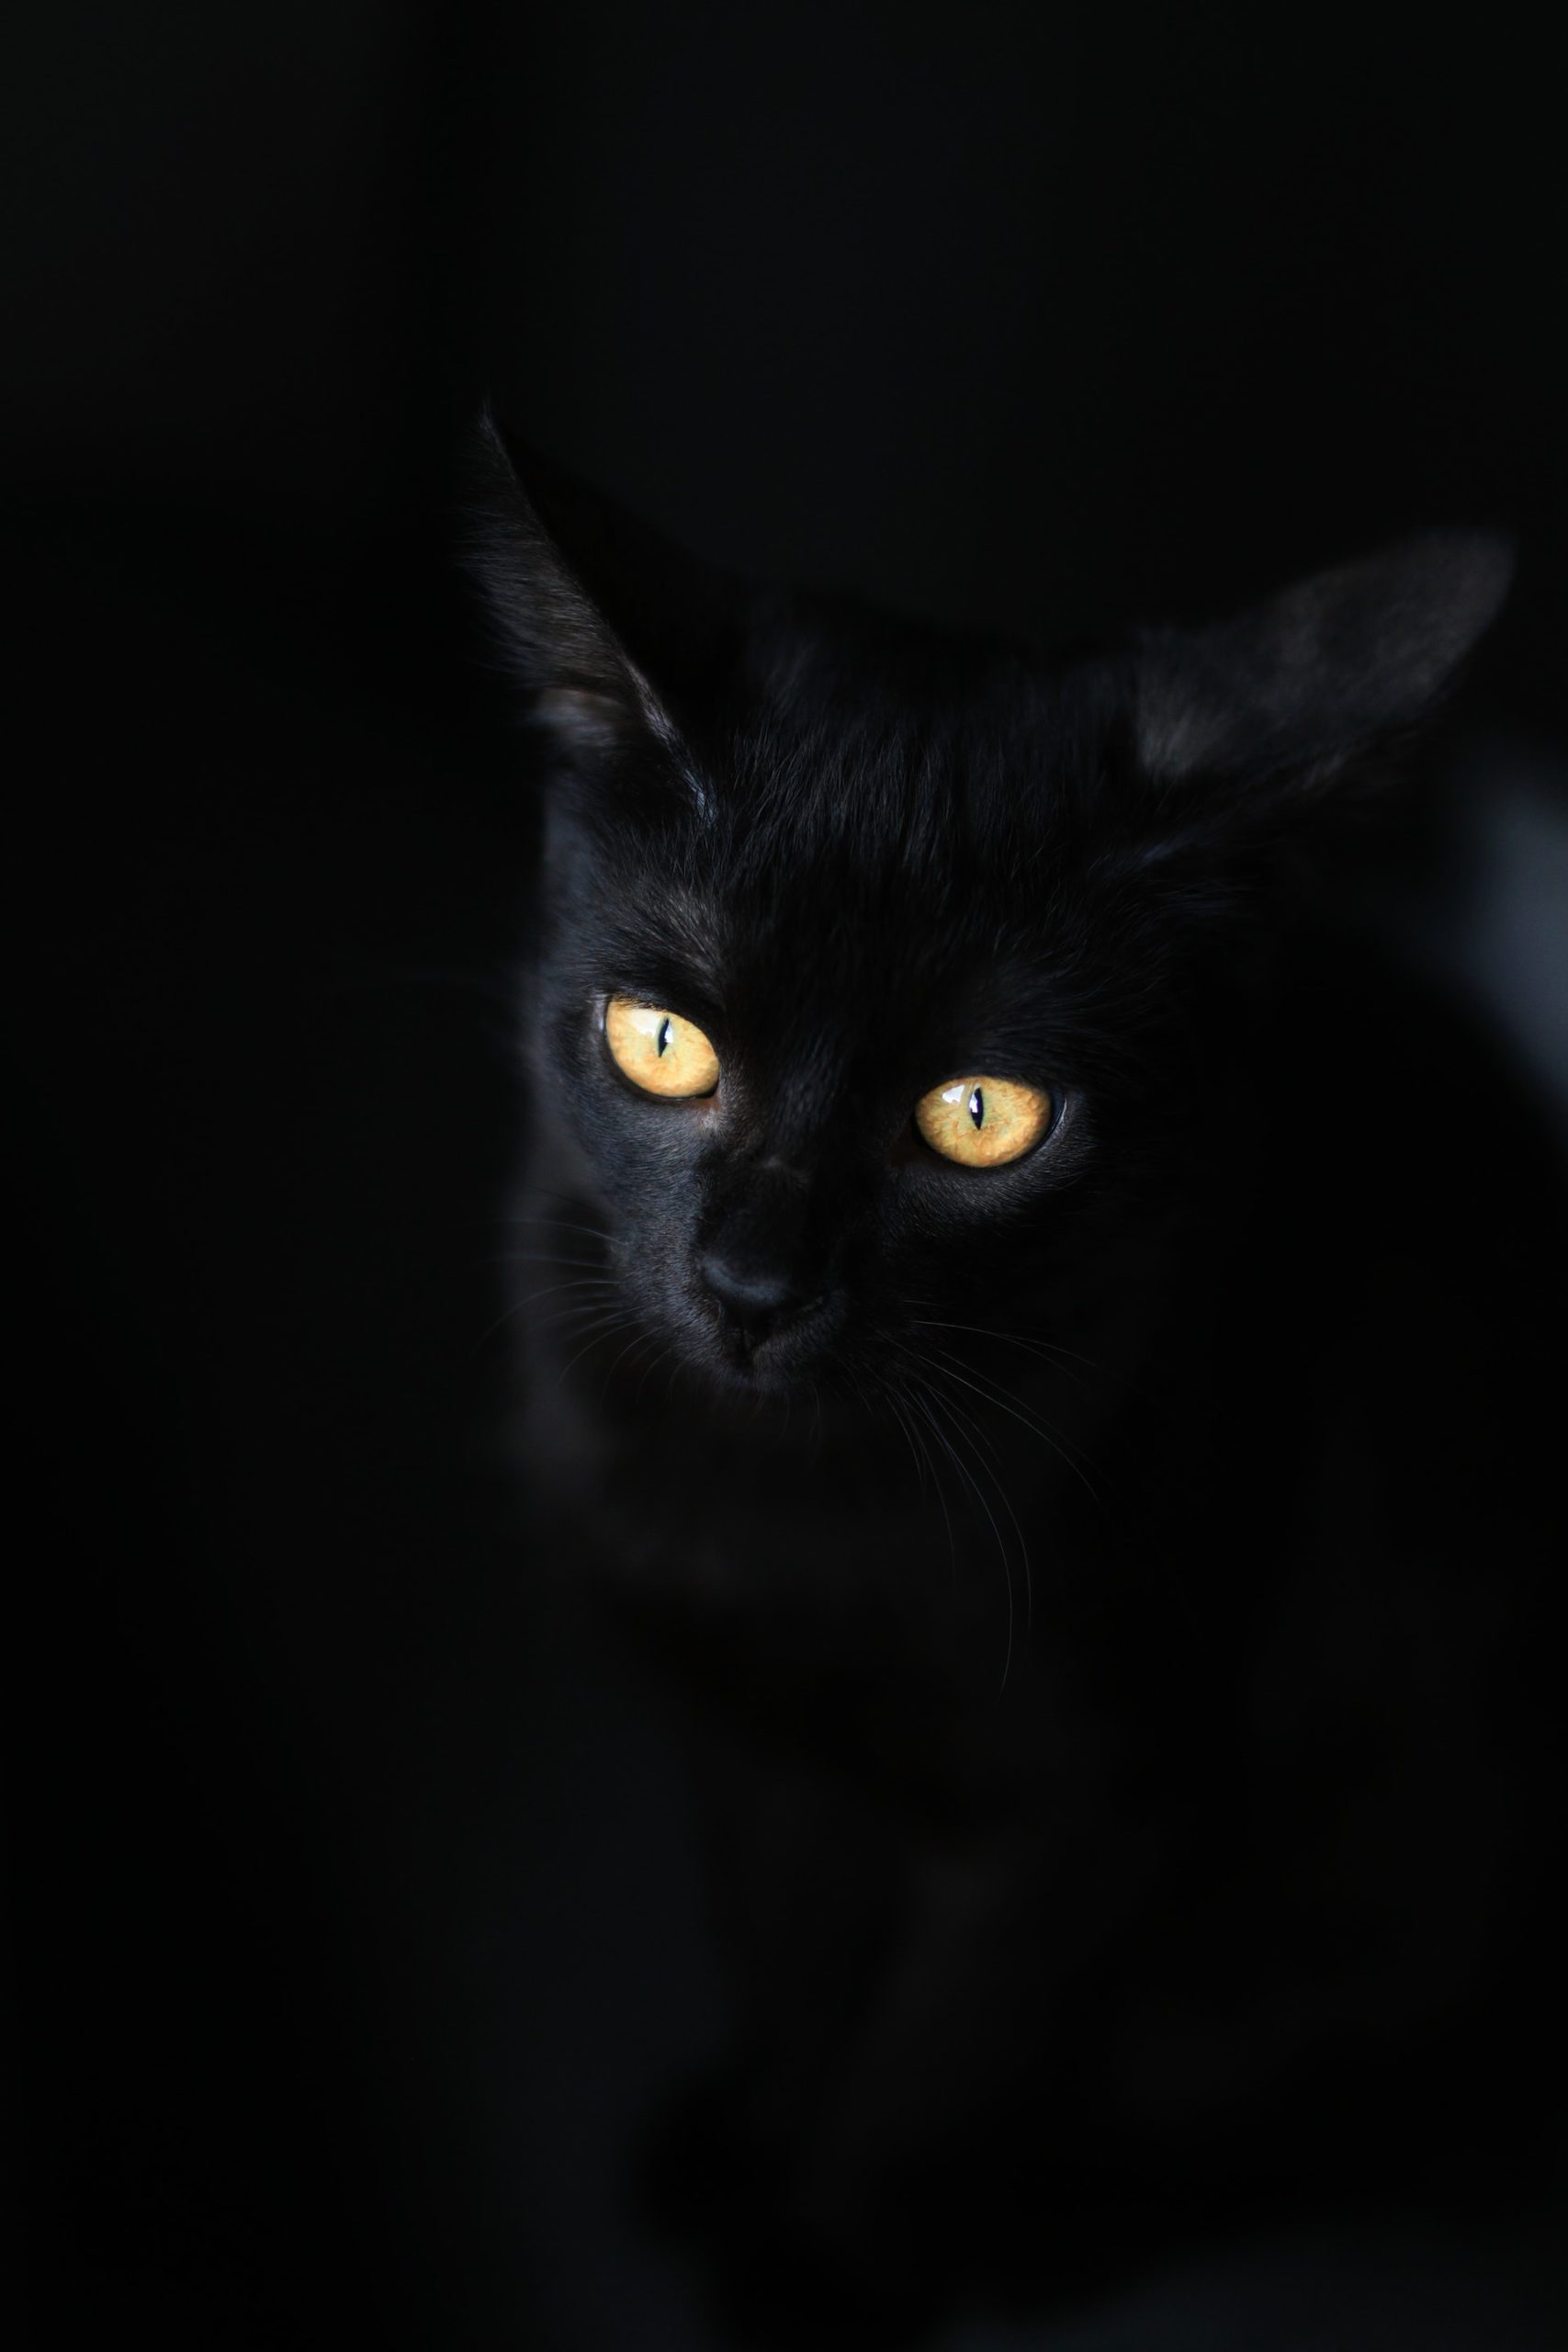 Black Cat Photo